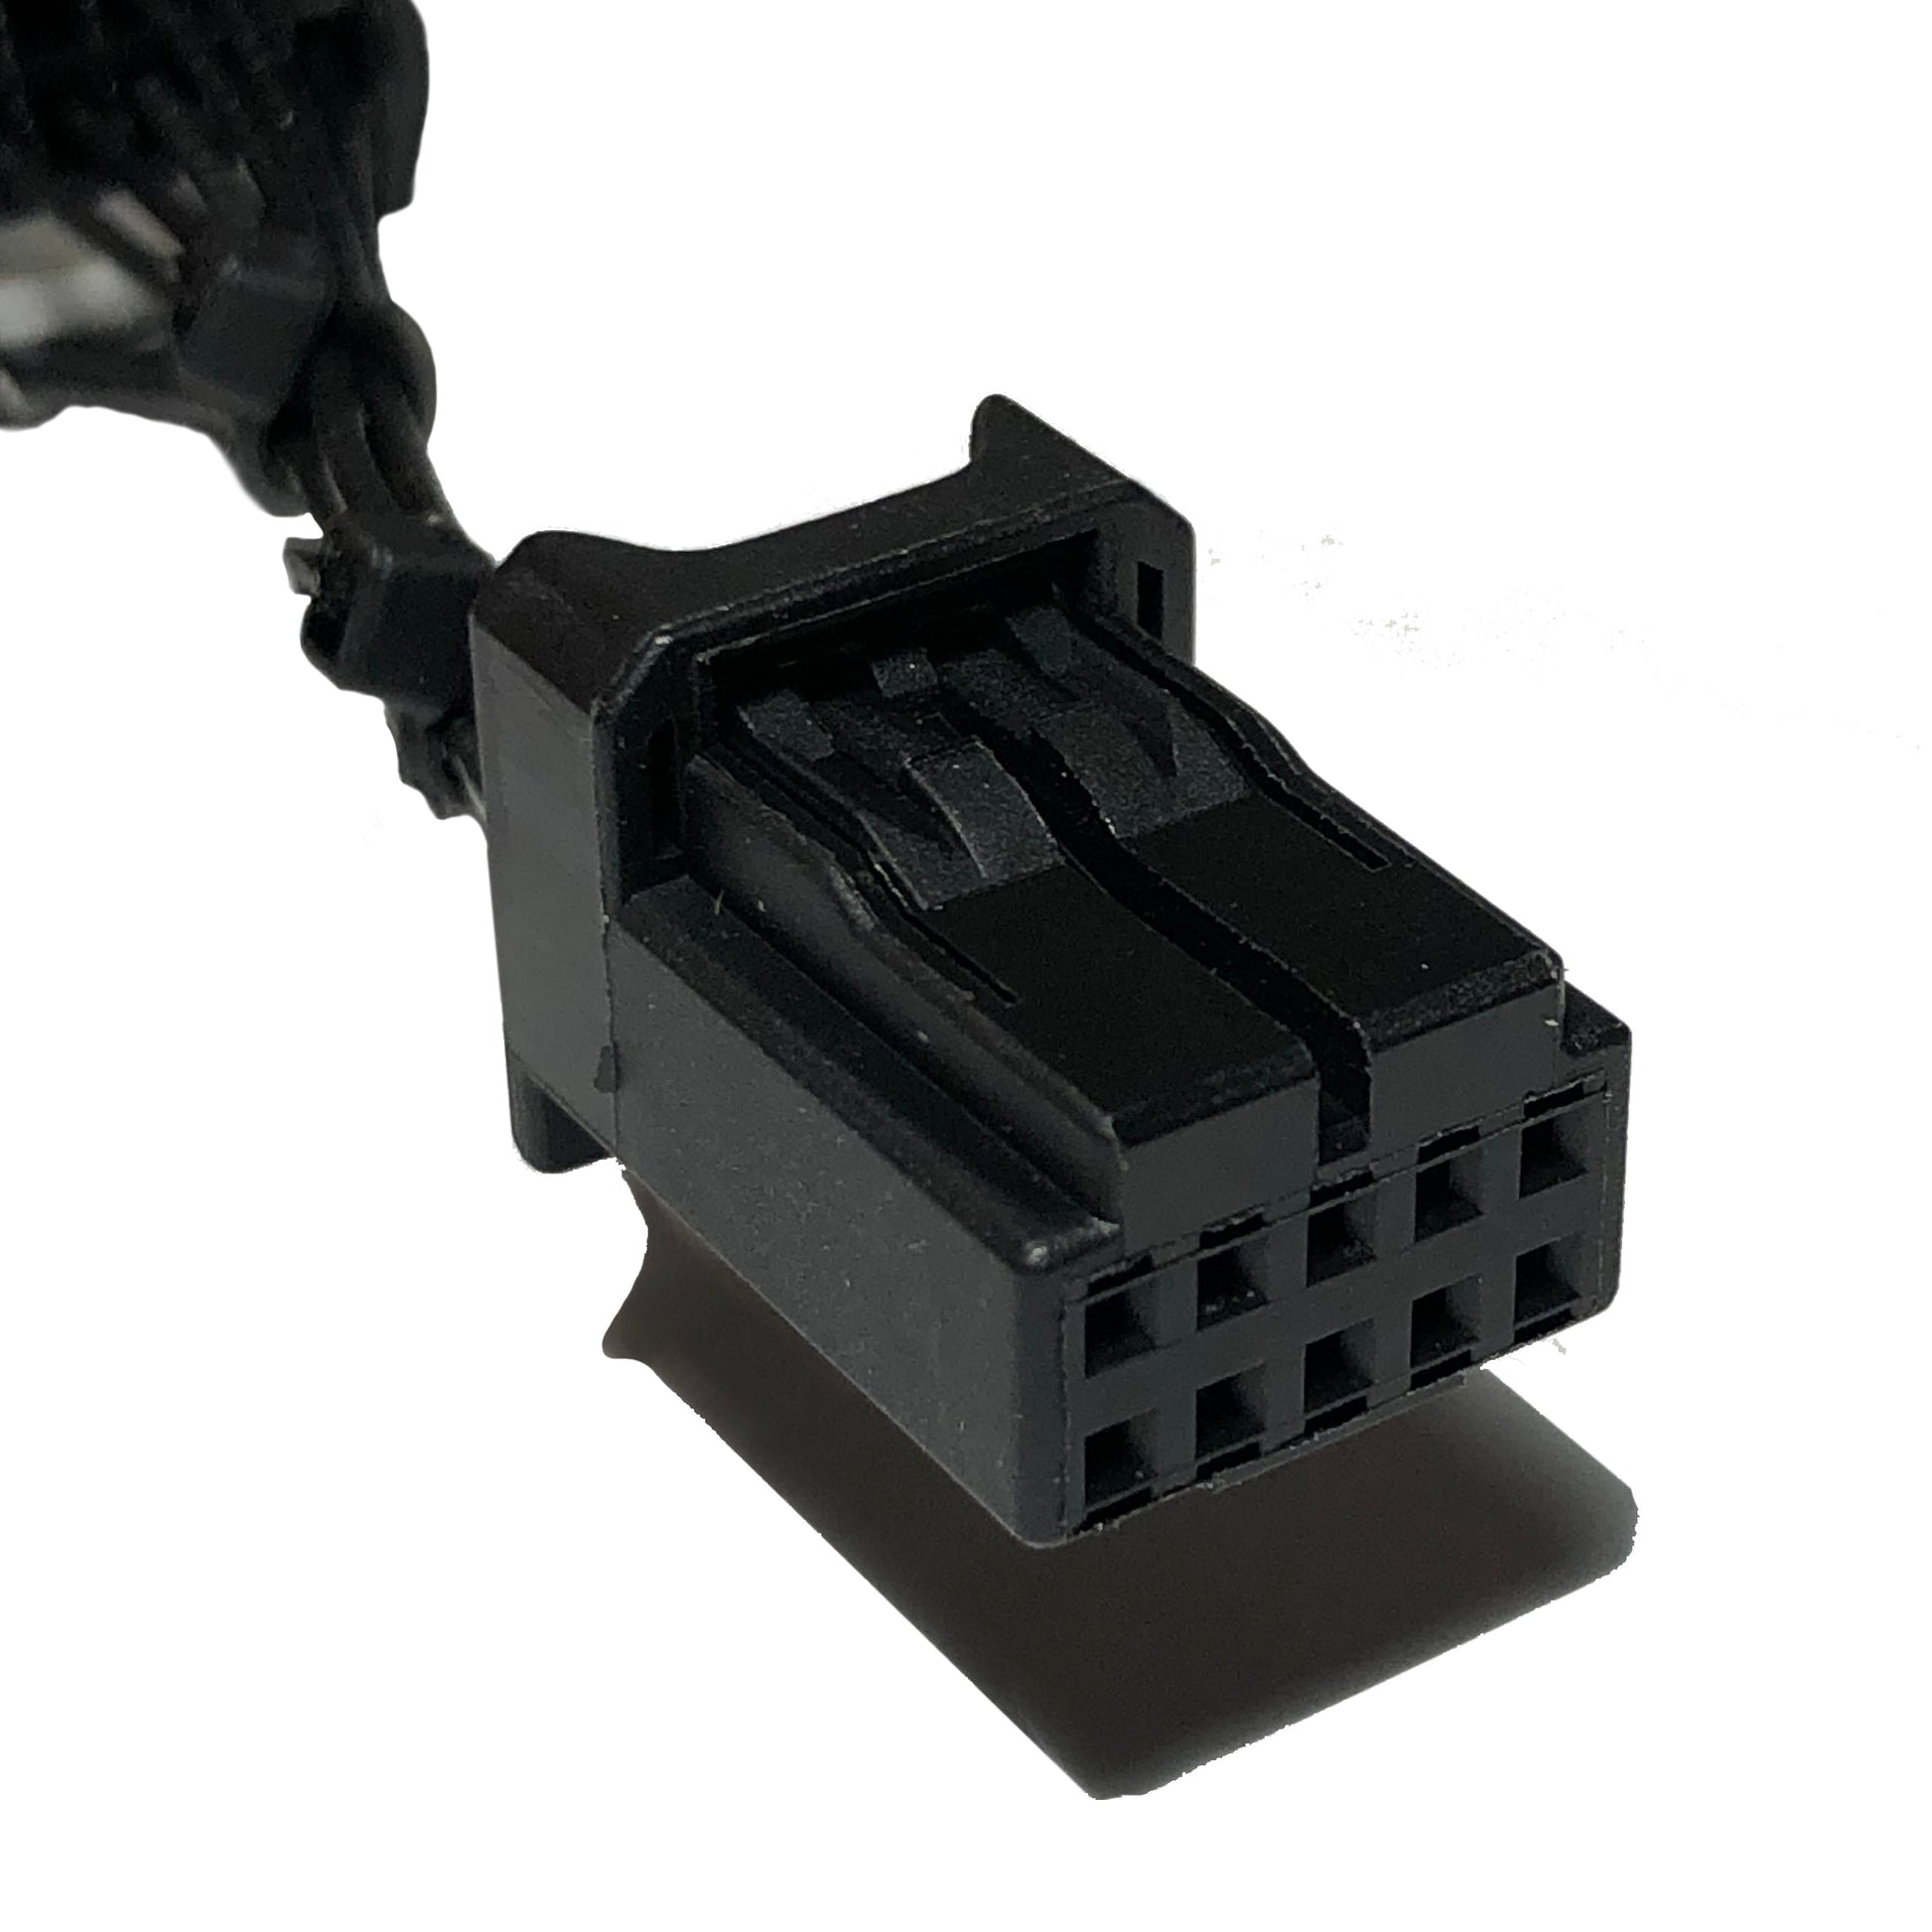 https://dongar.tech/cdn/shop/products/dash-cam-power-adapter-10-pin-type-a-204101.jpg?v=1697206030&width=1946